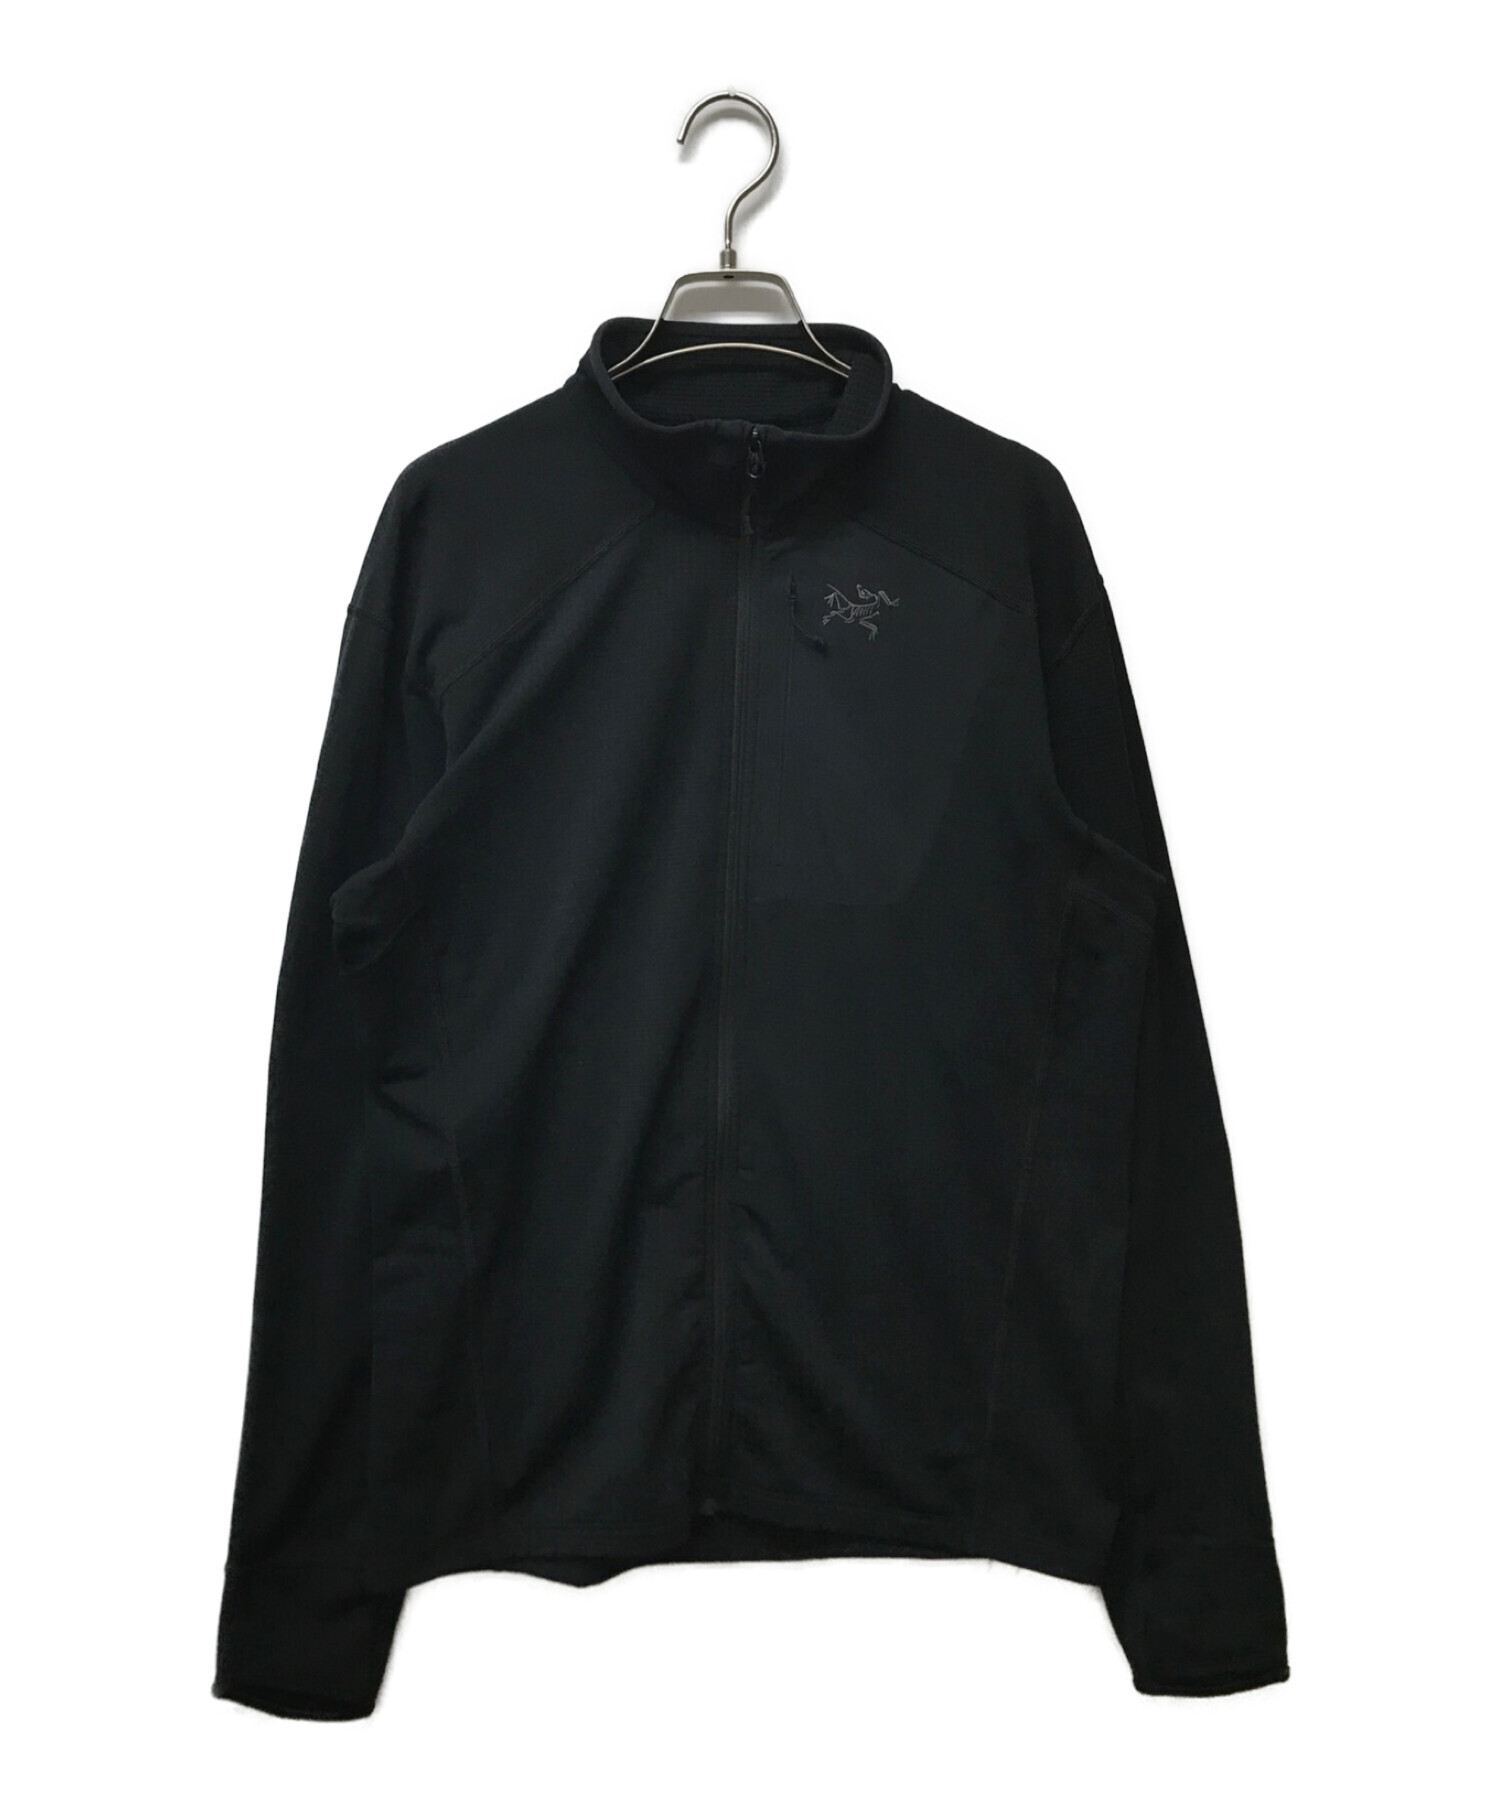 ARC'TERYX (アークテリクス) デルタジャケット ブラック サイズ:M